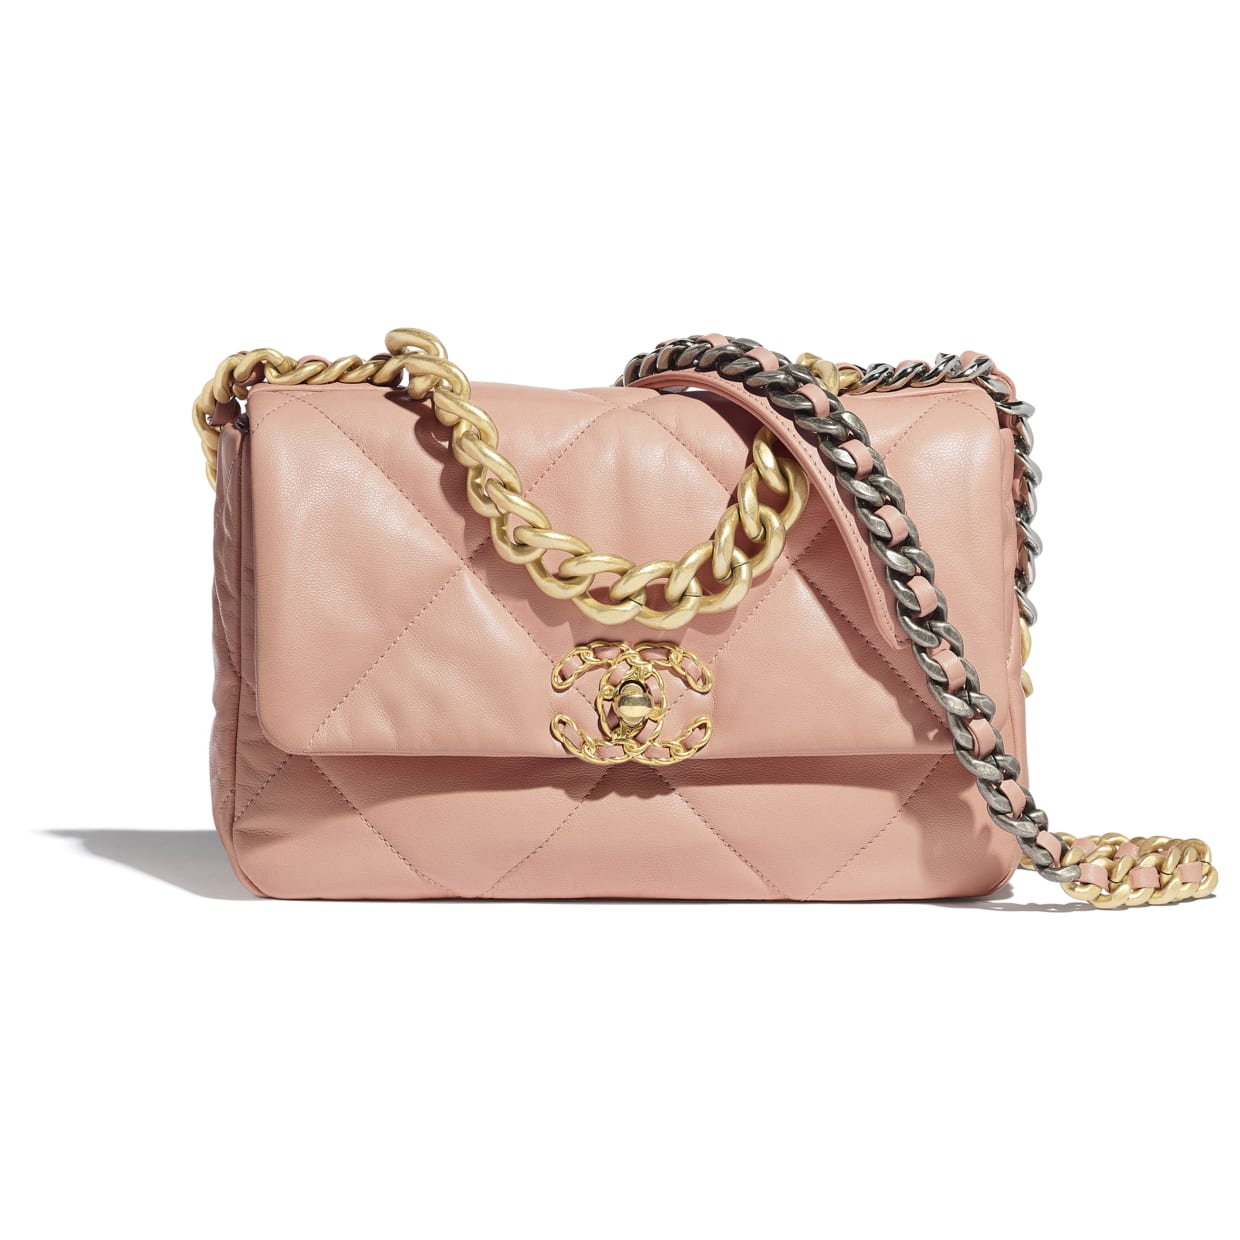 Everything about the Chanel 19 bag – l'Étoile de Saint Honoré